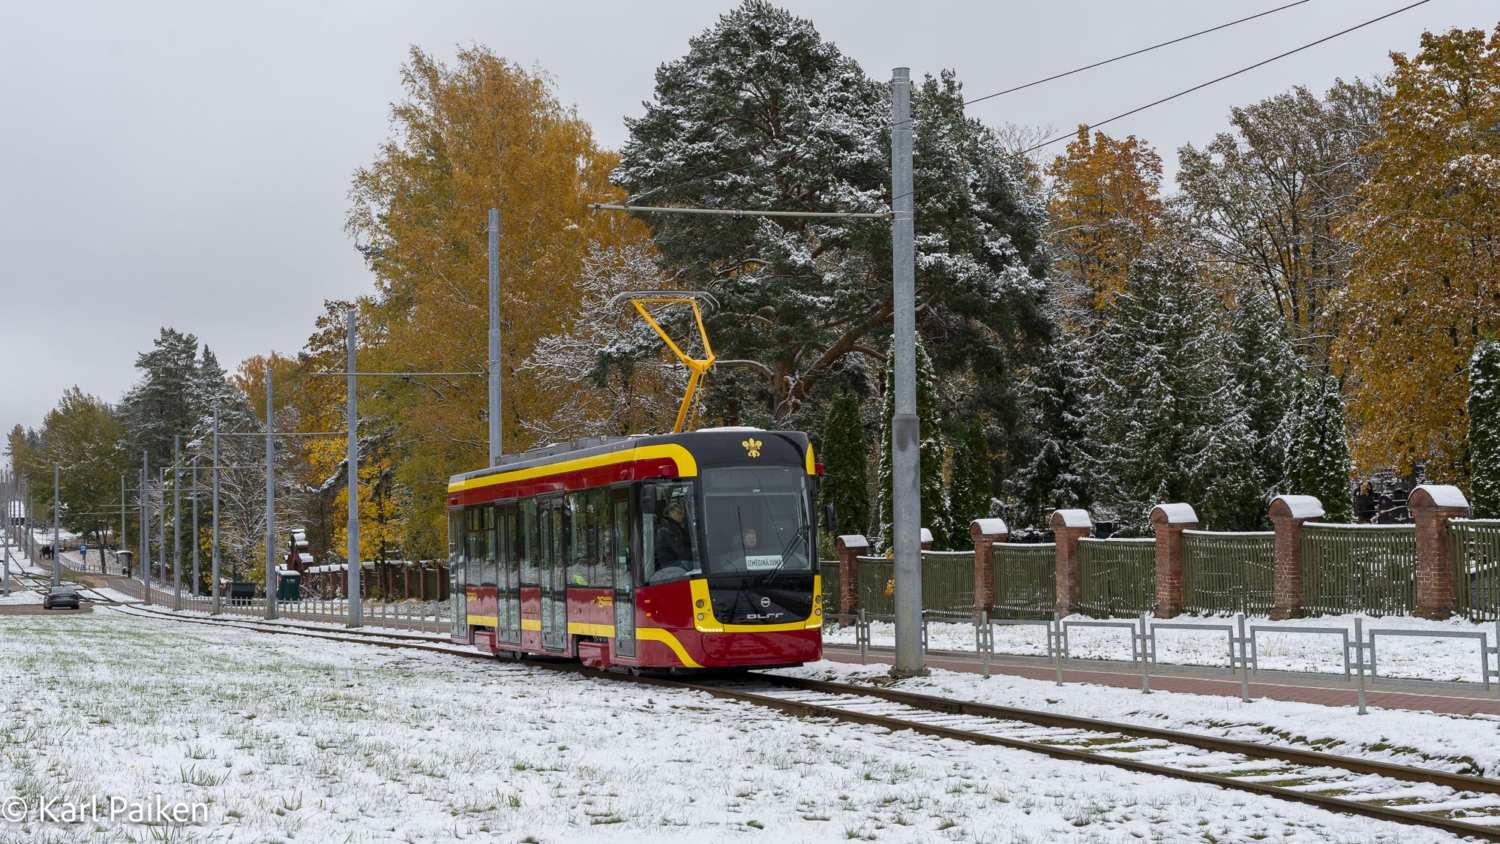 Tramvaj EVO1 budoucího ev. č. 023 během zkušebních jízd v Daugavpilsu. (foto: Karl Paiken)